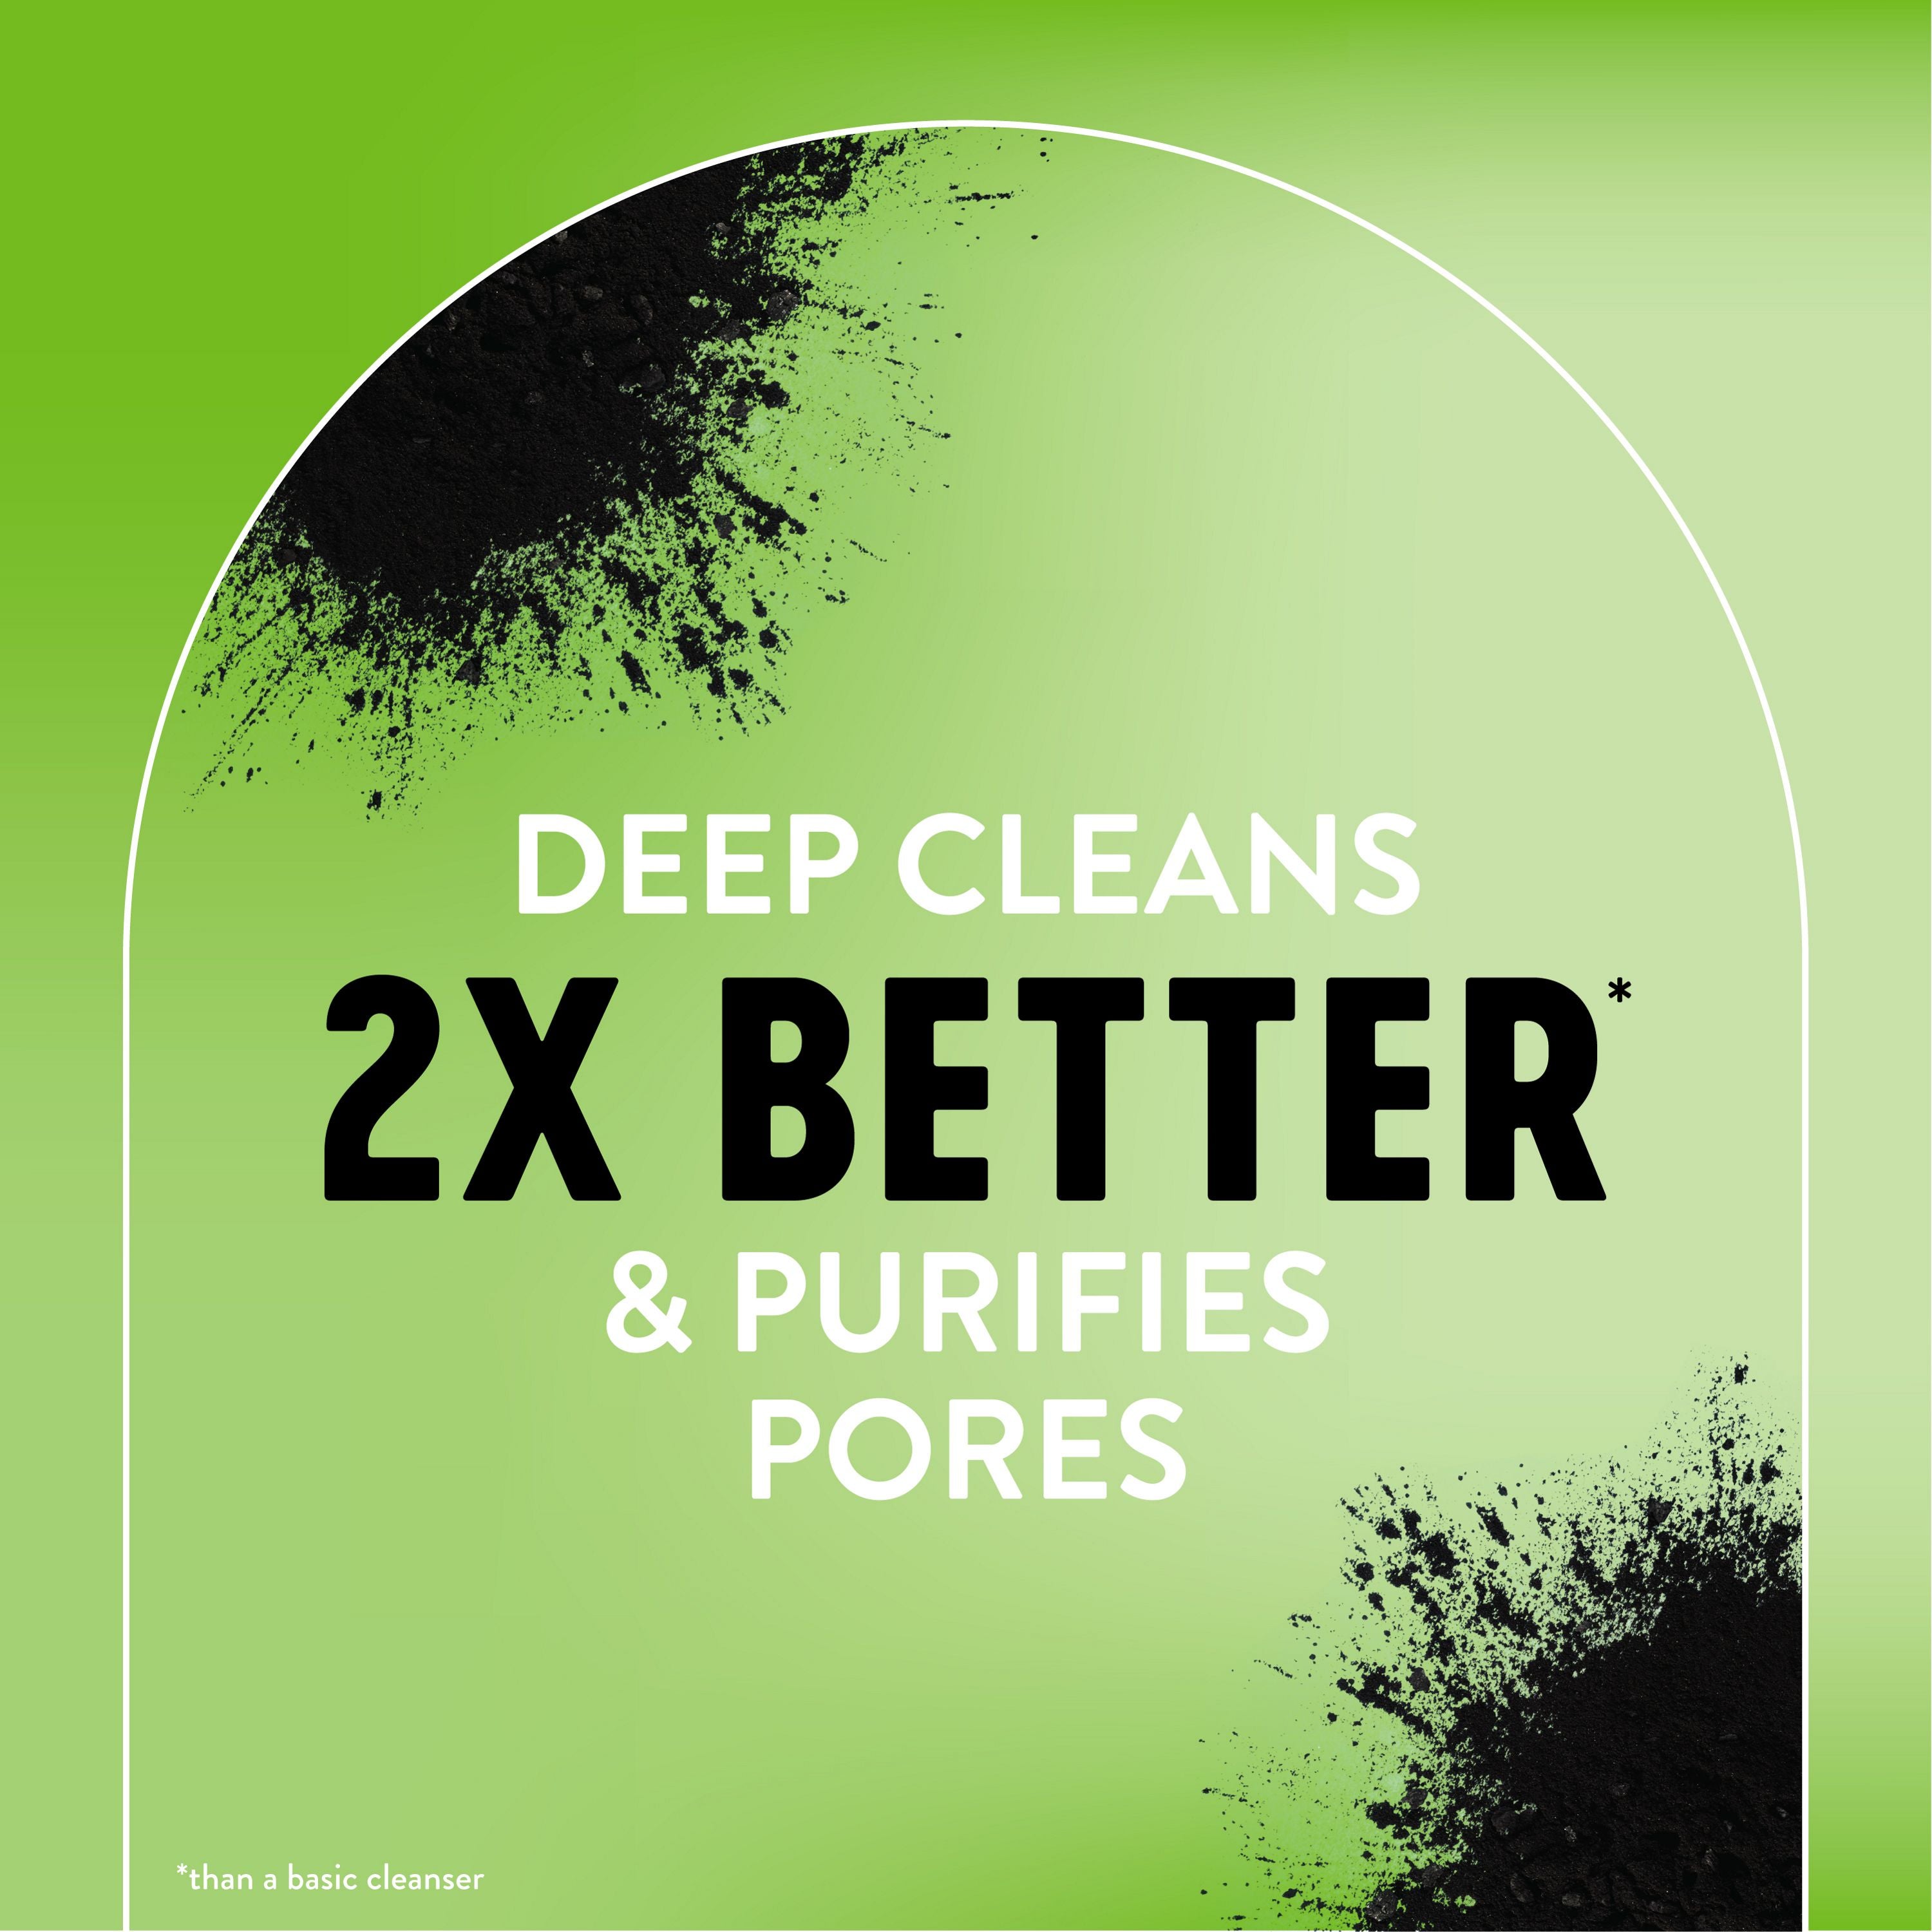 English: Deep cleans 2x better*than a basic cleaner & purifies pores Français: 2x plus efficace*qu’un nettoyant ordinaire pour nettoyer en profondeur et purifie les pores